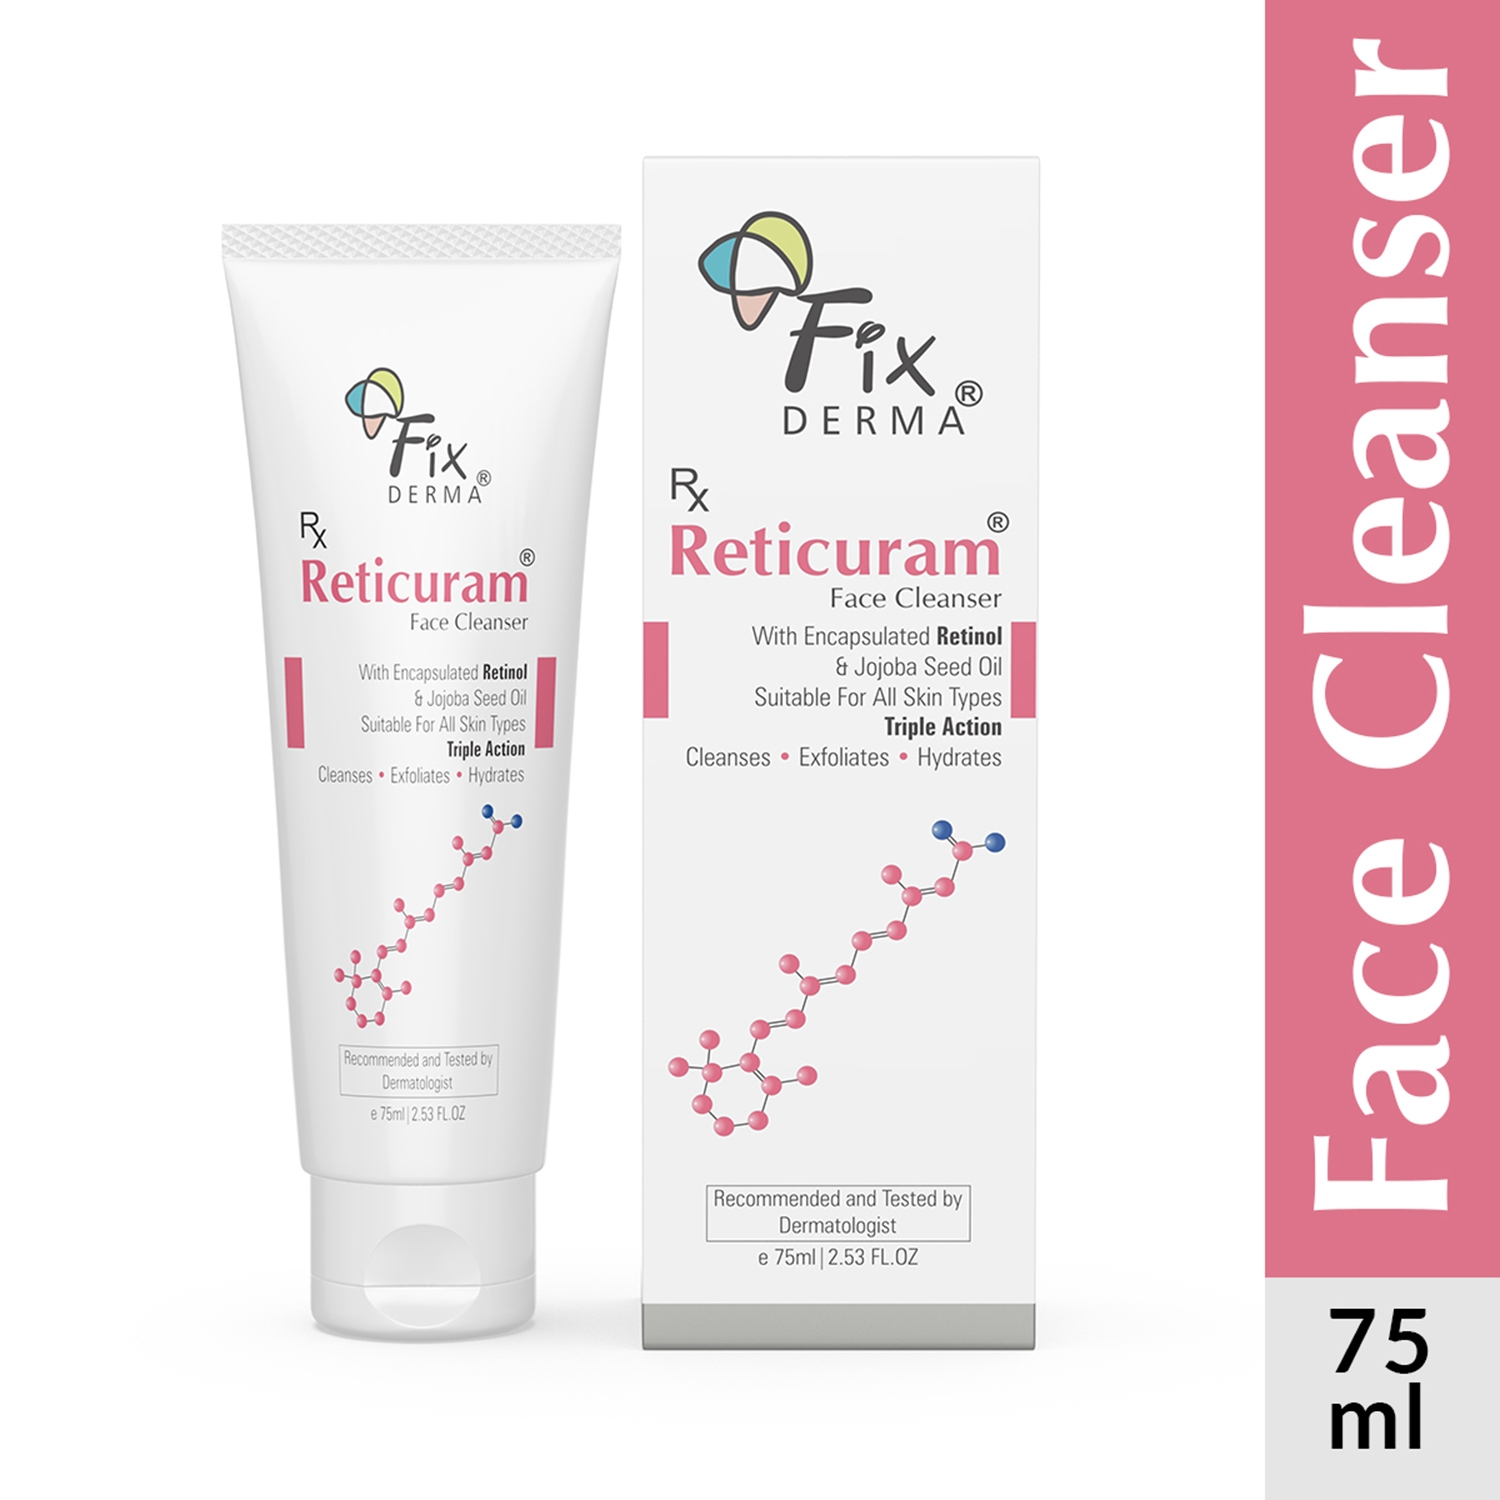 Fixderma | Fixderma Reticuram Face Cleanser (75ml)